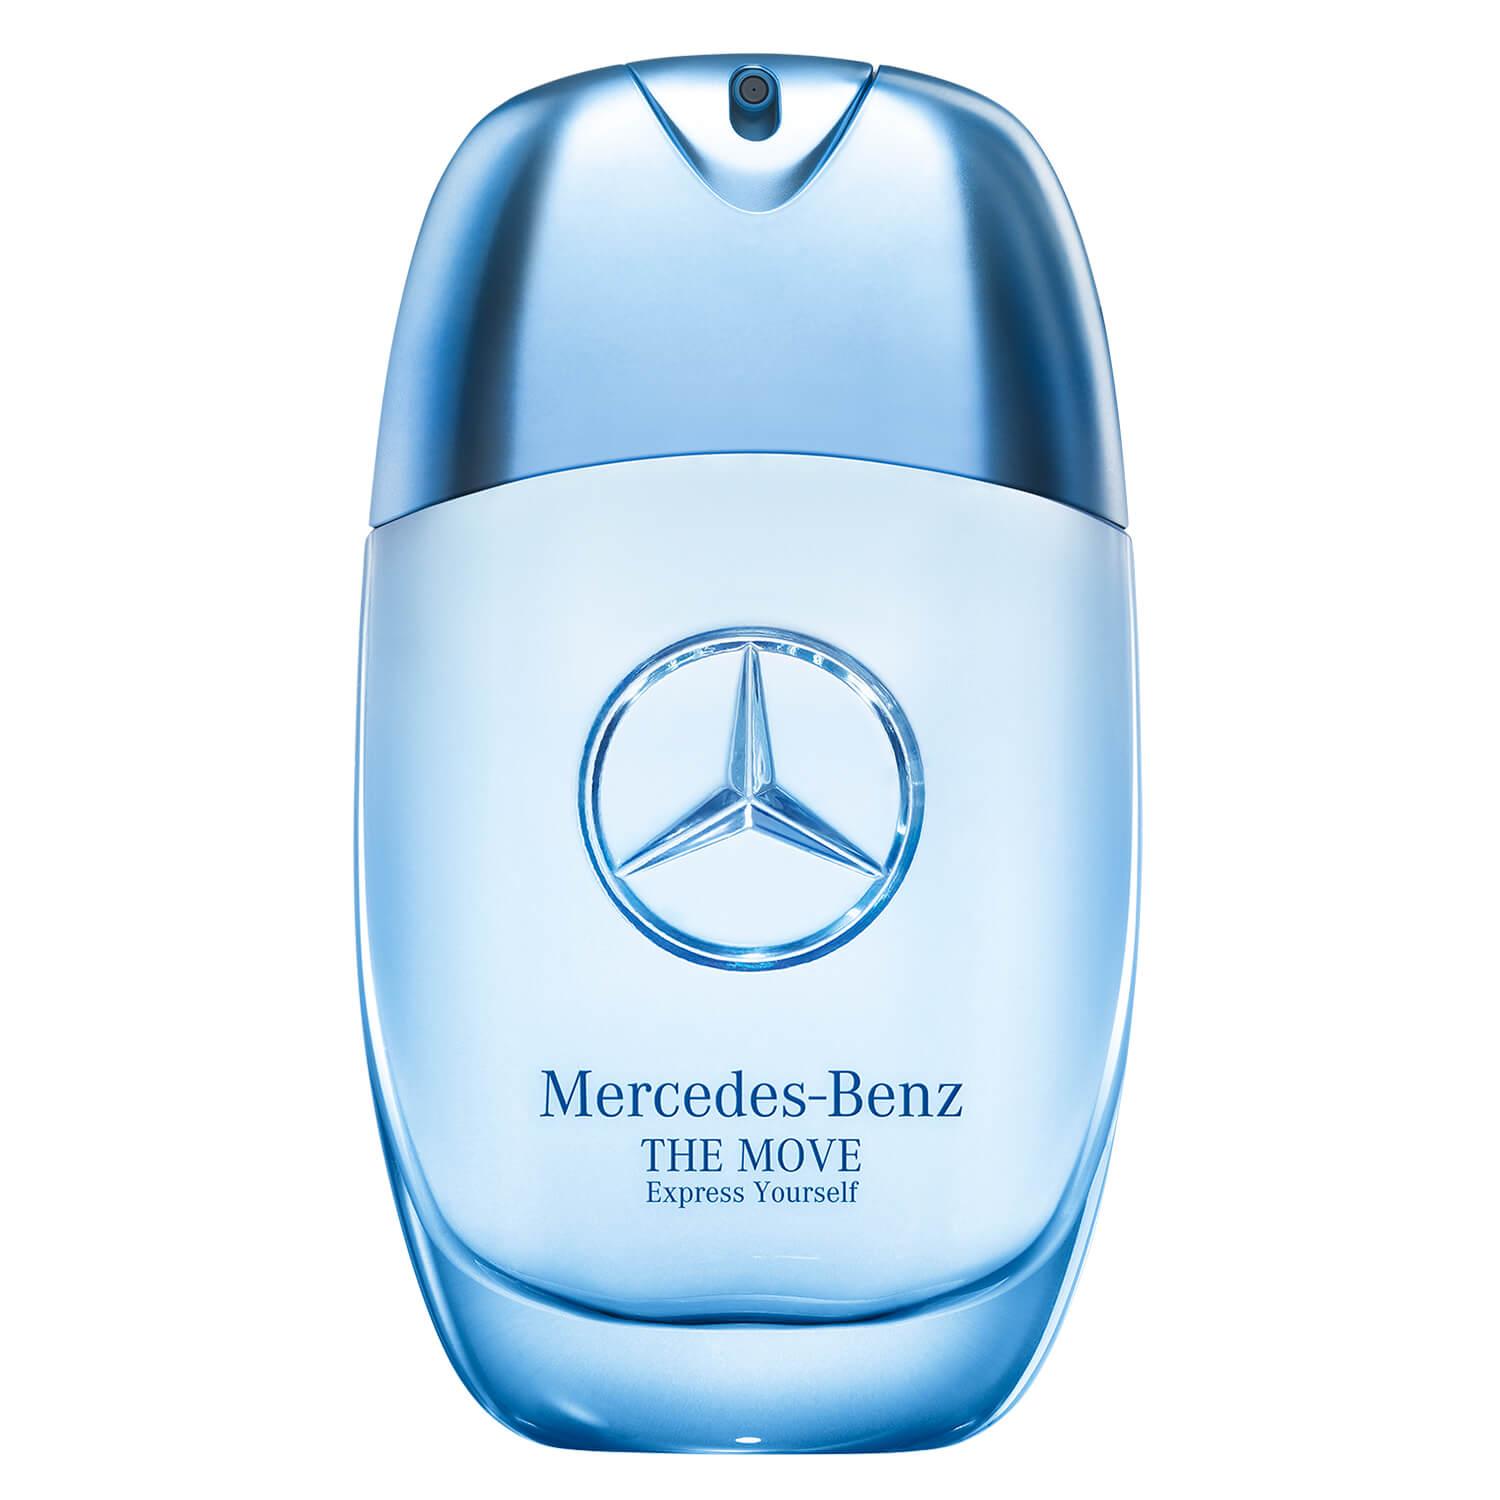 Mercedes-Benz - The Move Express Yourself Eau de Toilette